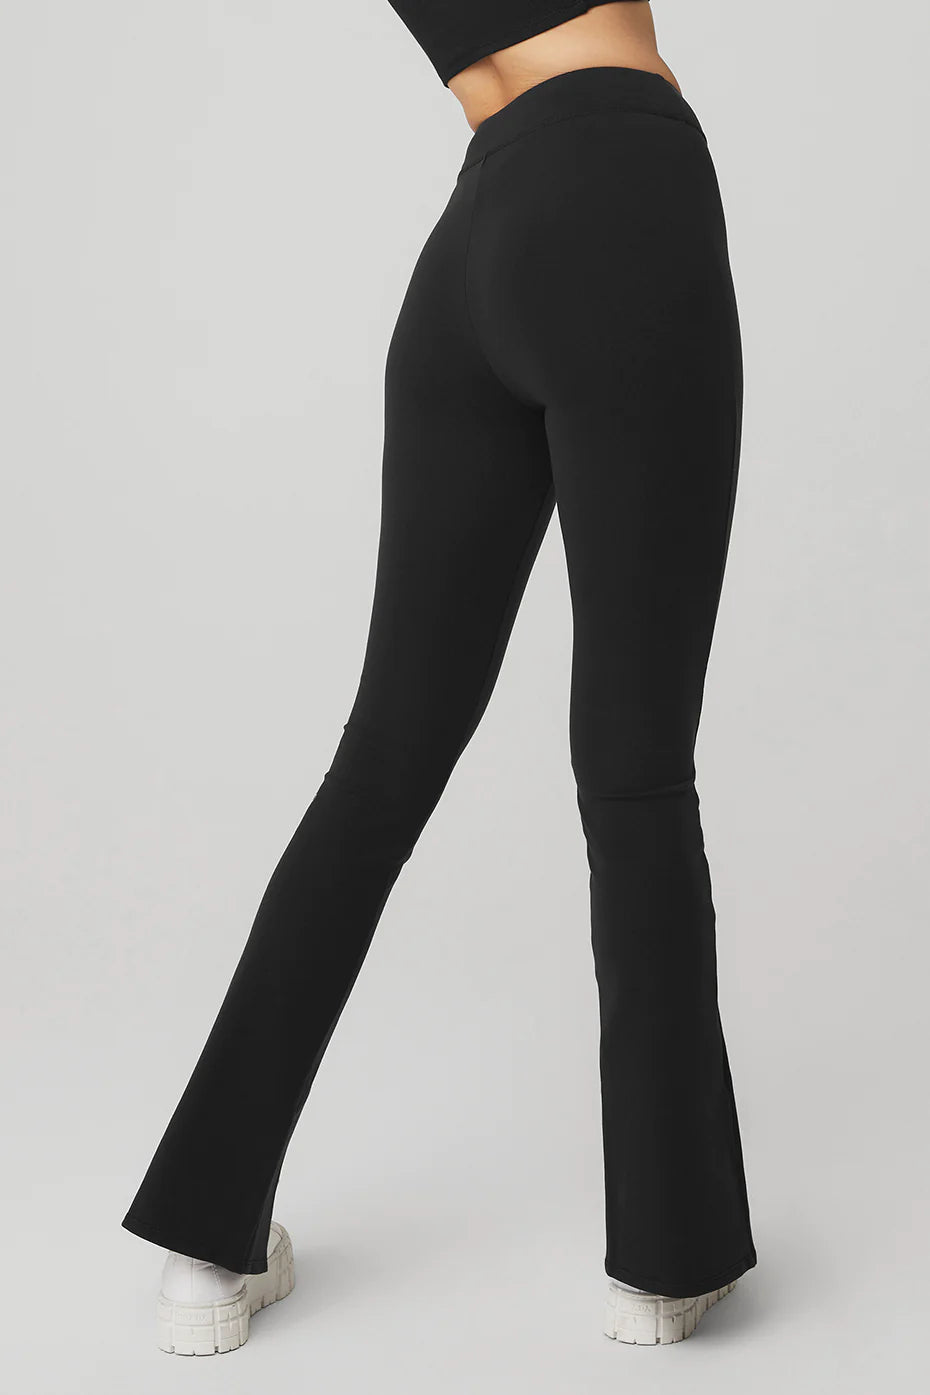 Airbrush High-waist Flutter Legging In Black